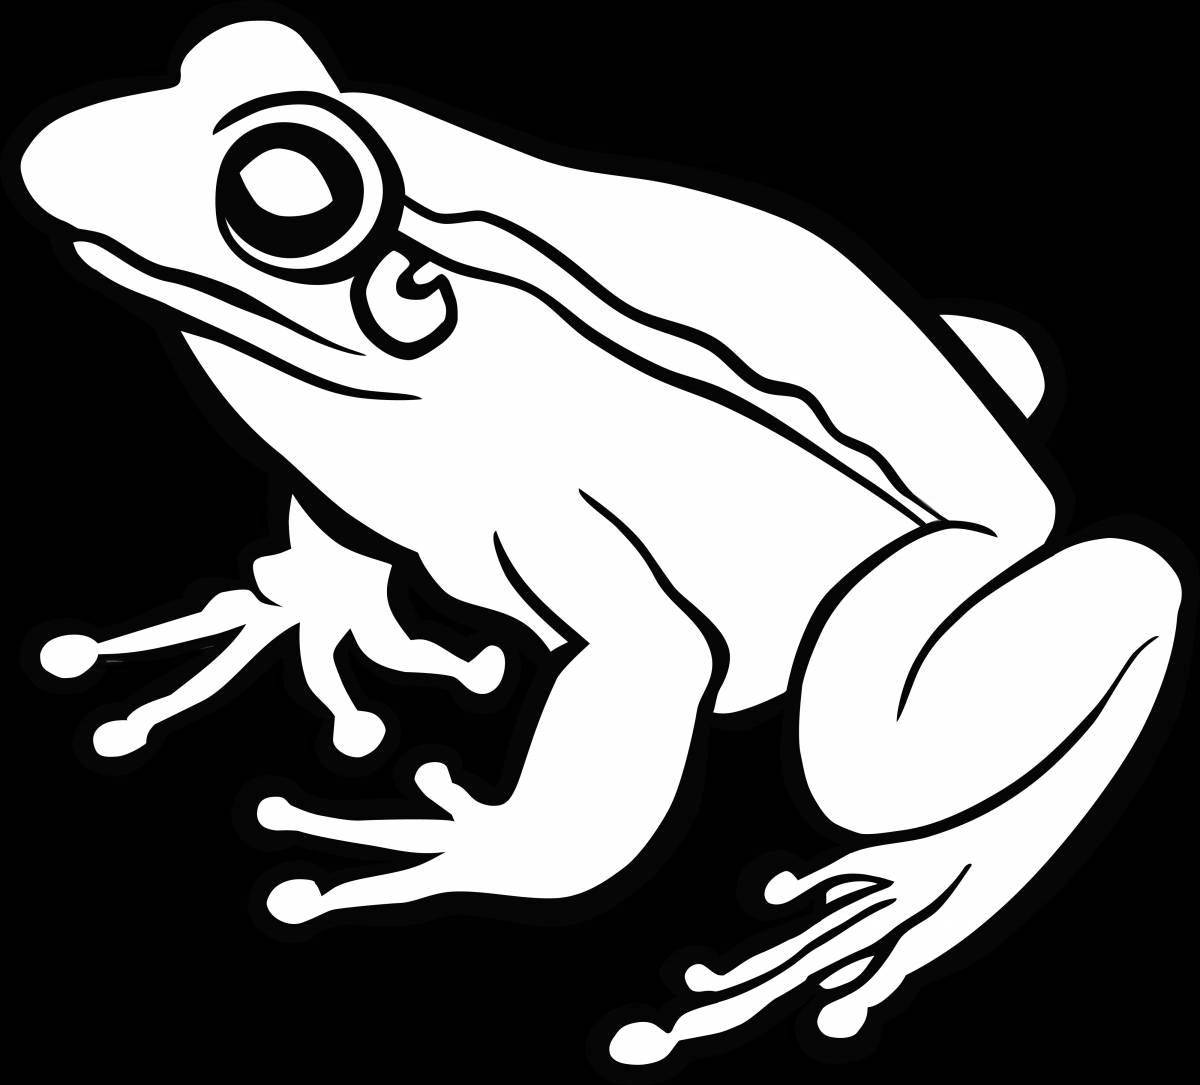 Анимированная страница раскраски древесной лягушки